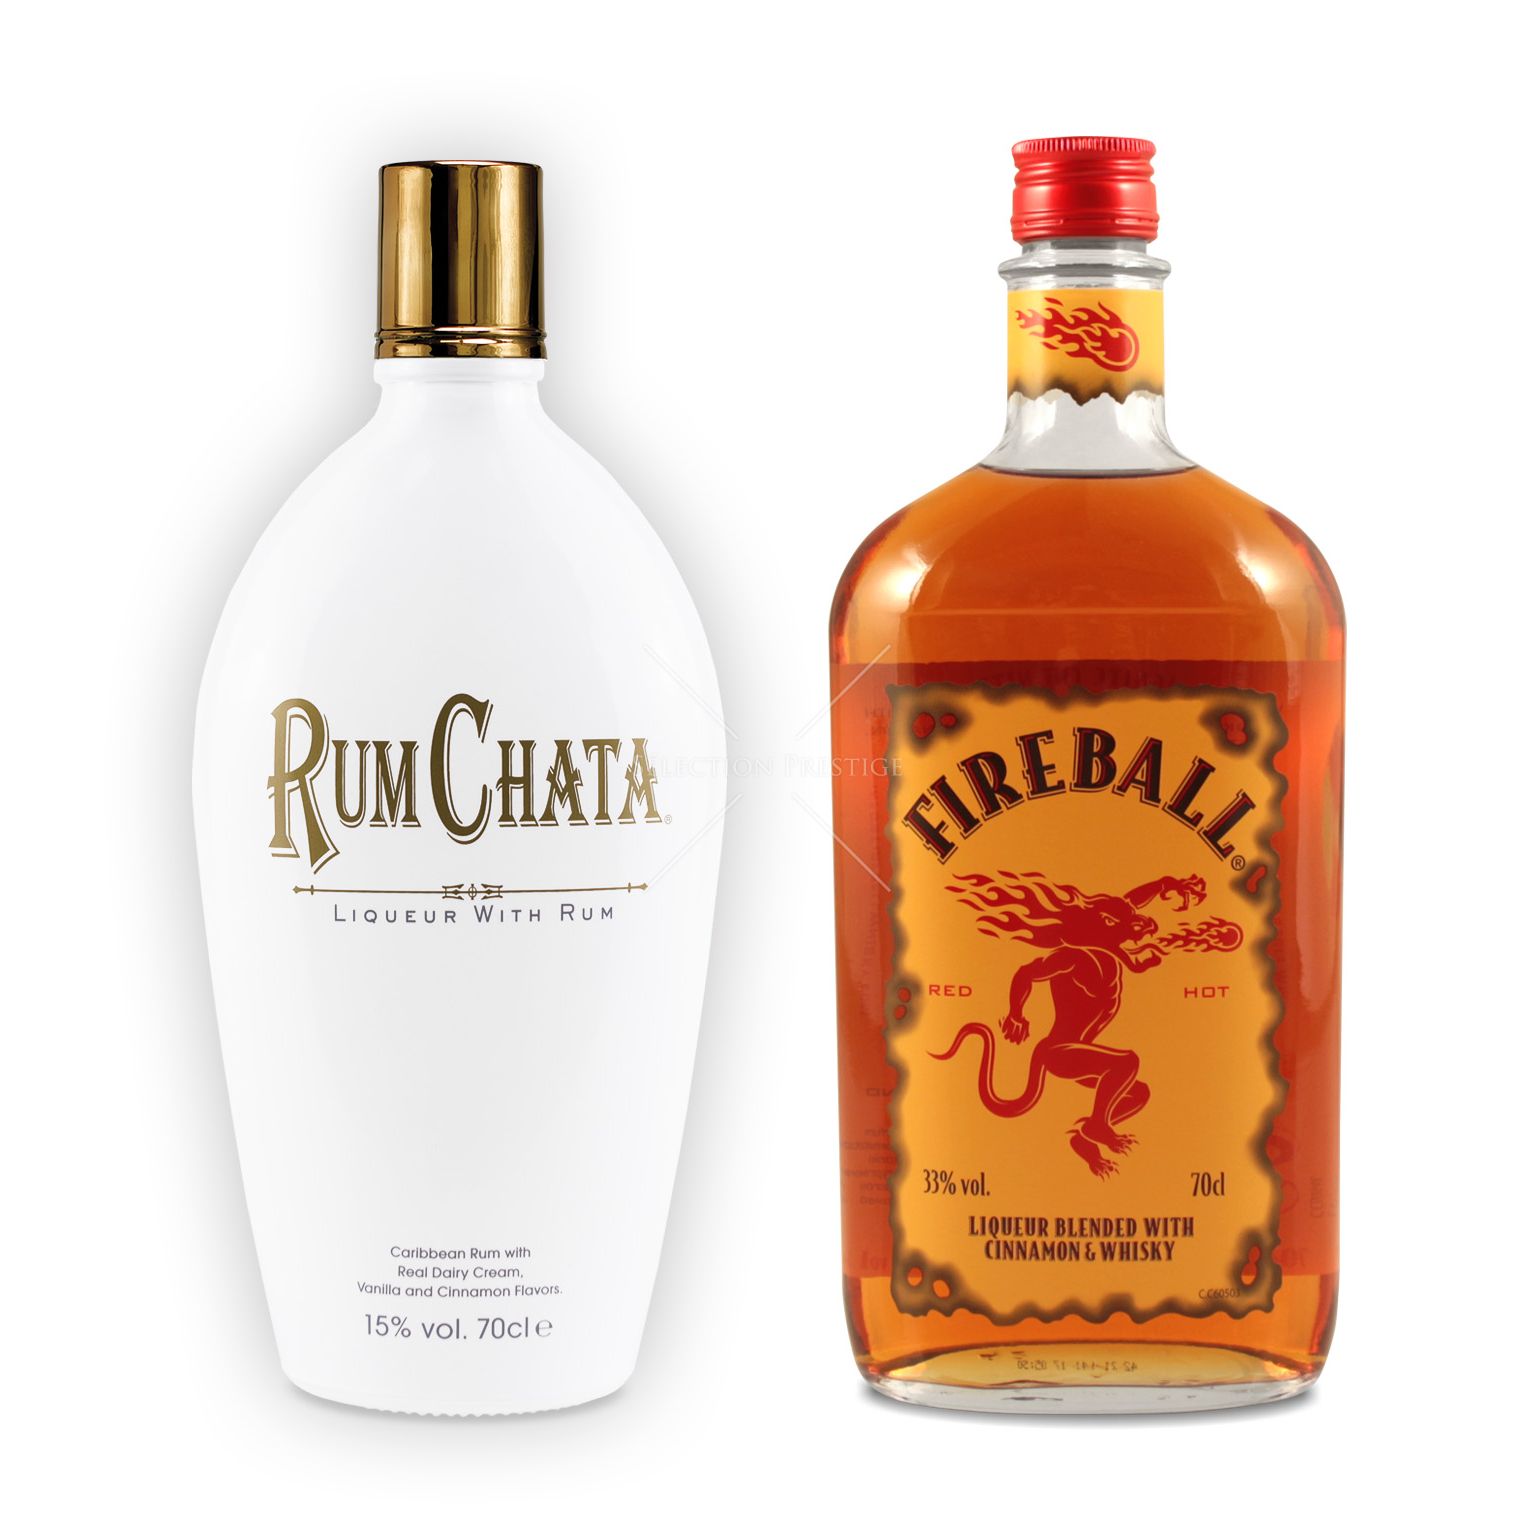 RumChata + Fireball Cinnamon Whisky Liqueur - RumChata - Liqueur